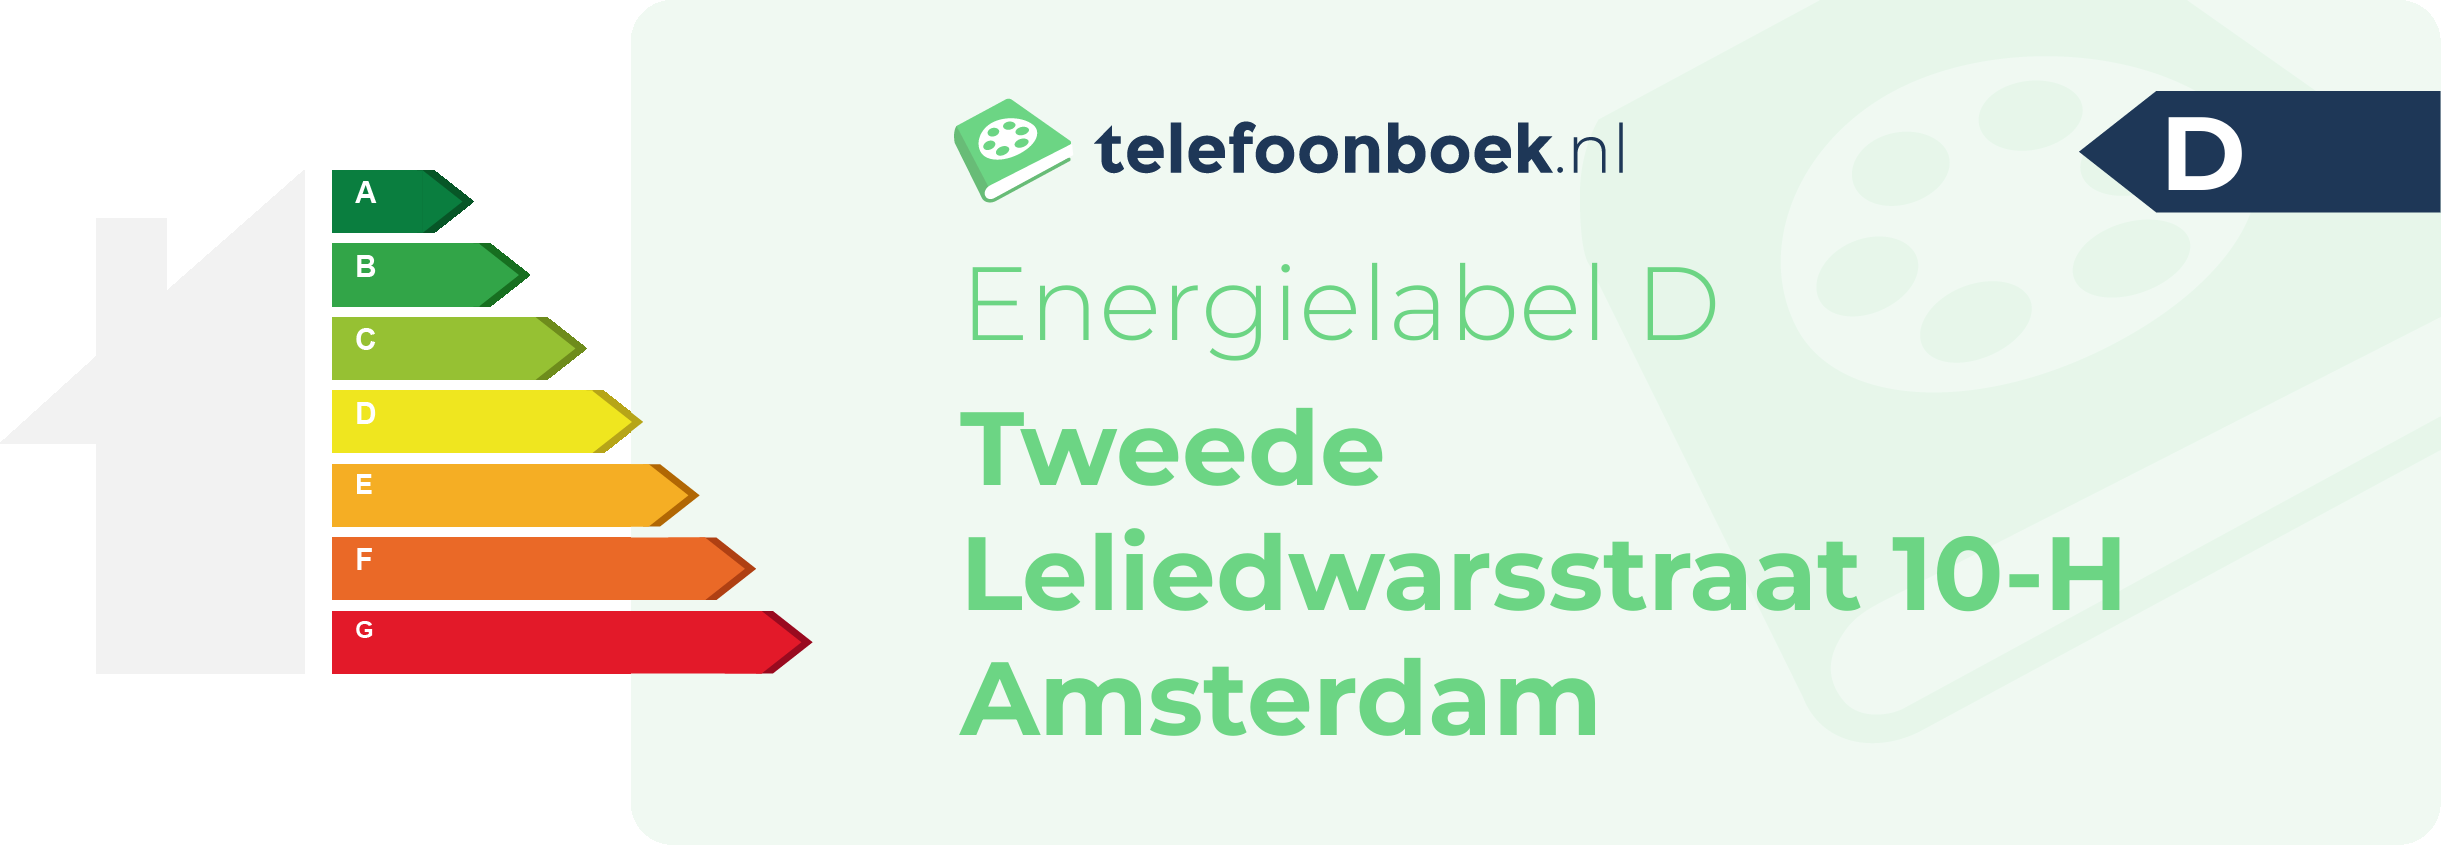 Energielabel Tweede Leliedwarsstraat 10-H Amsterdam